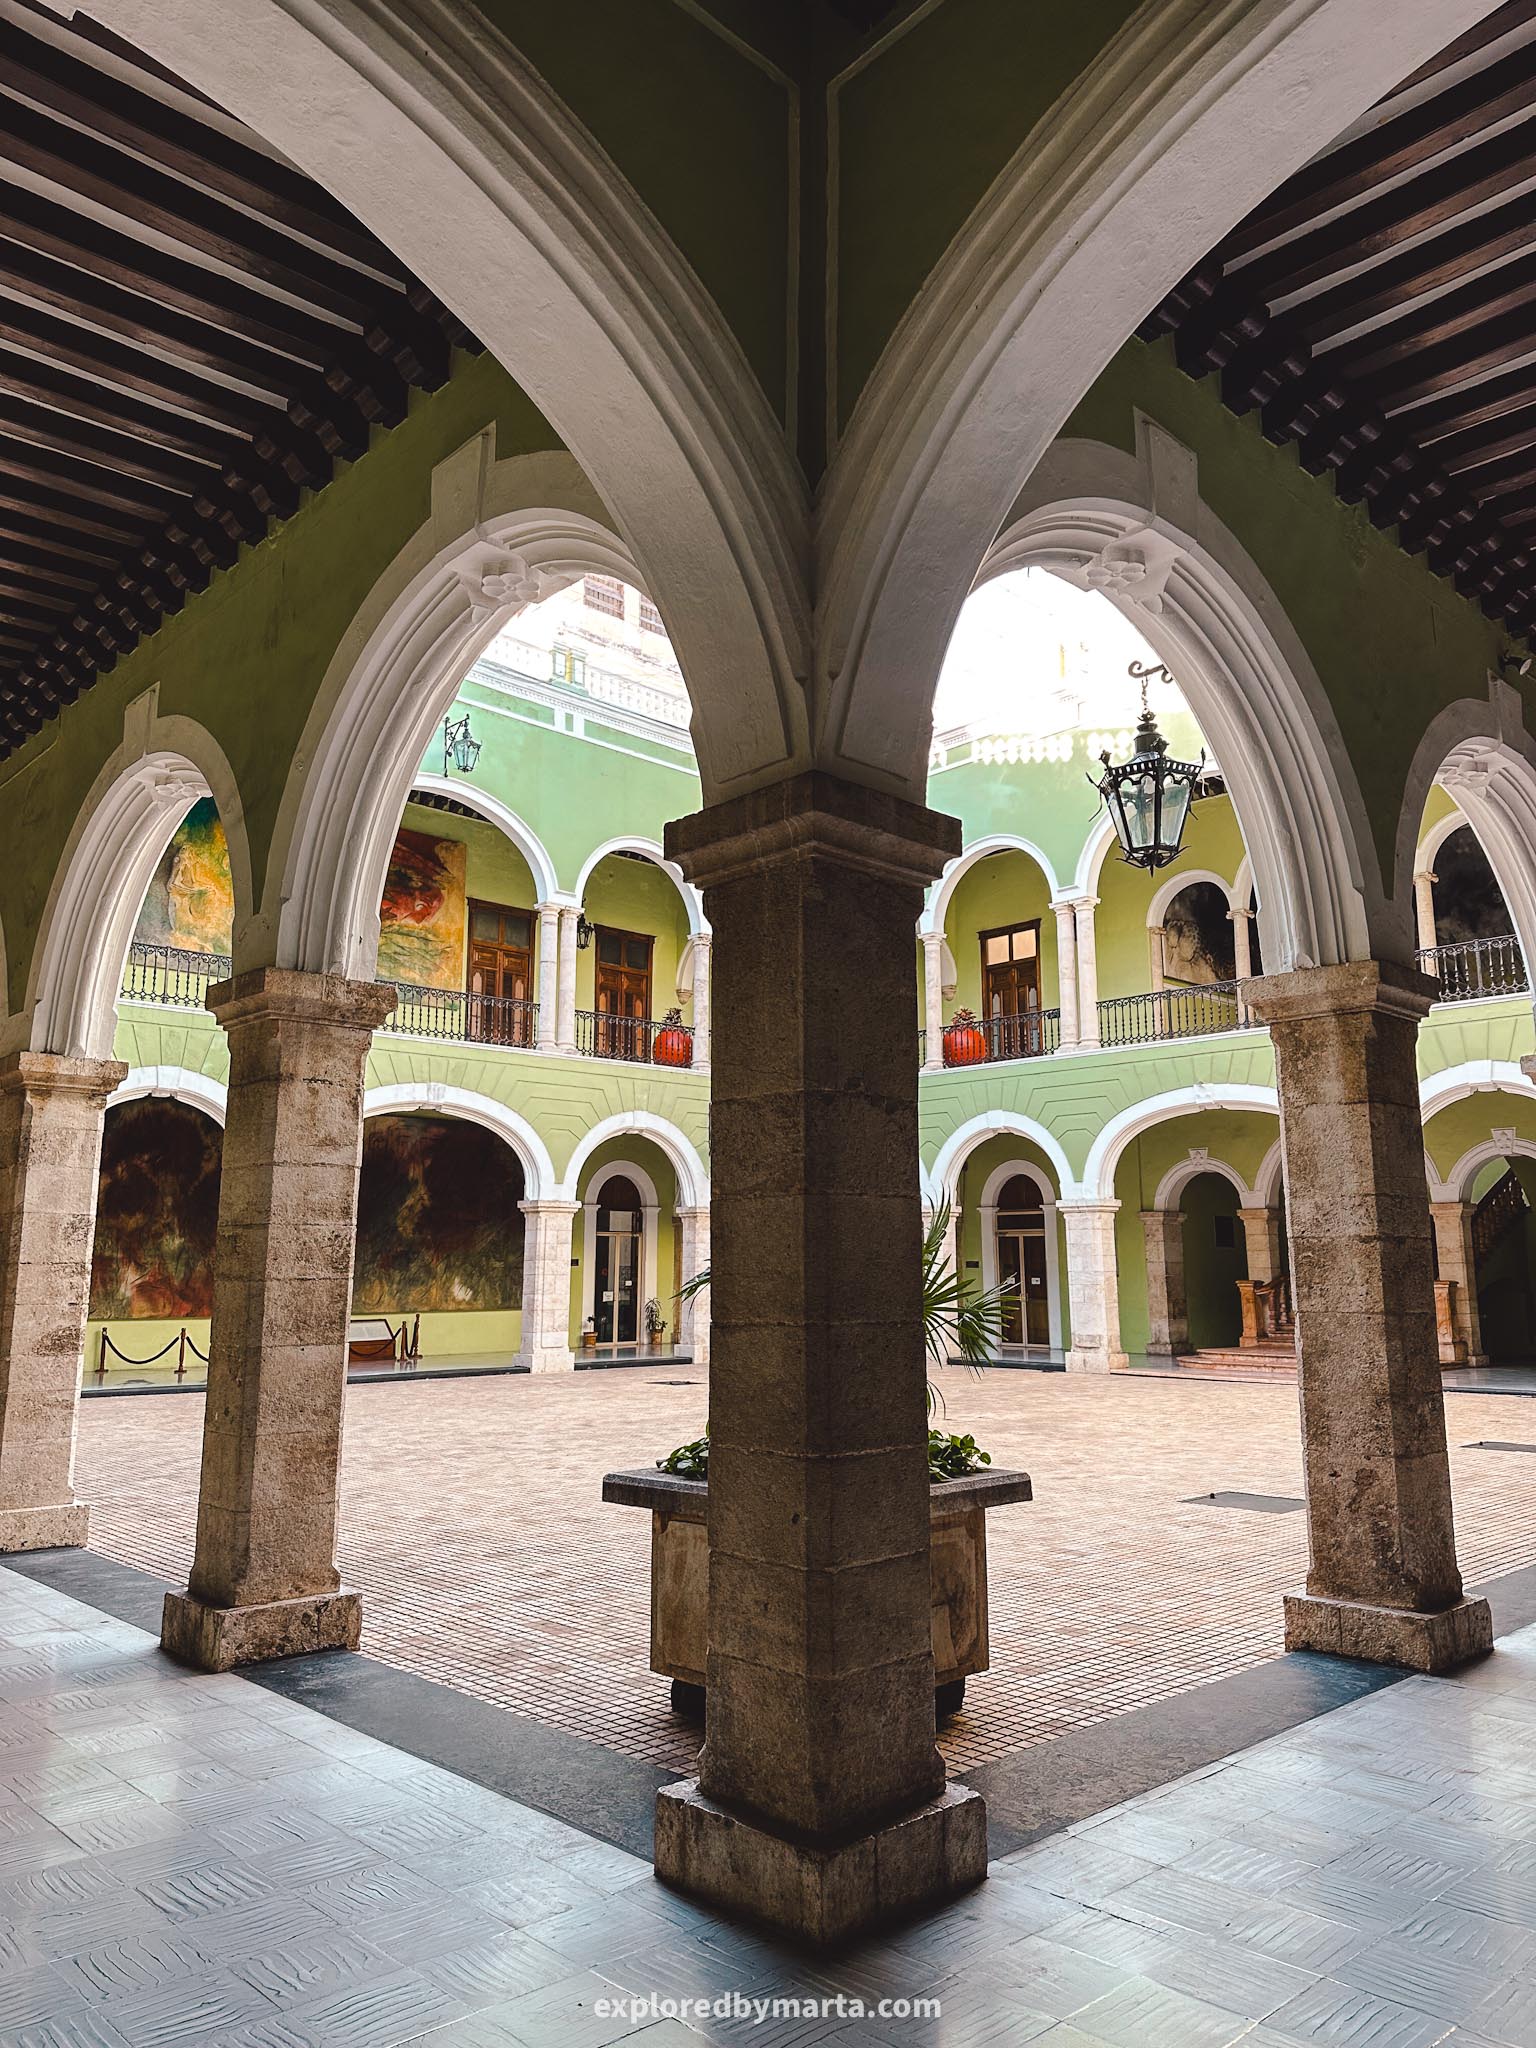 Merida, Mexico - Palacio de Gobierno del Estado de Yucatán - a green 19th century government building with arcaded courtyard and murals on the walls